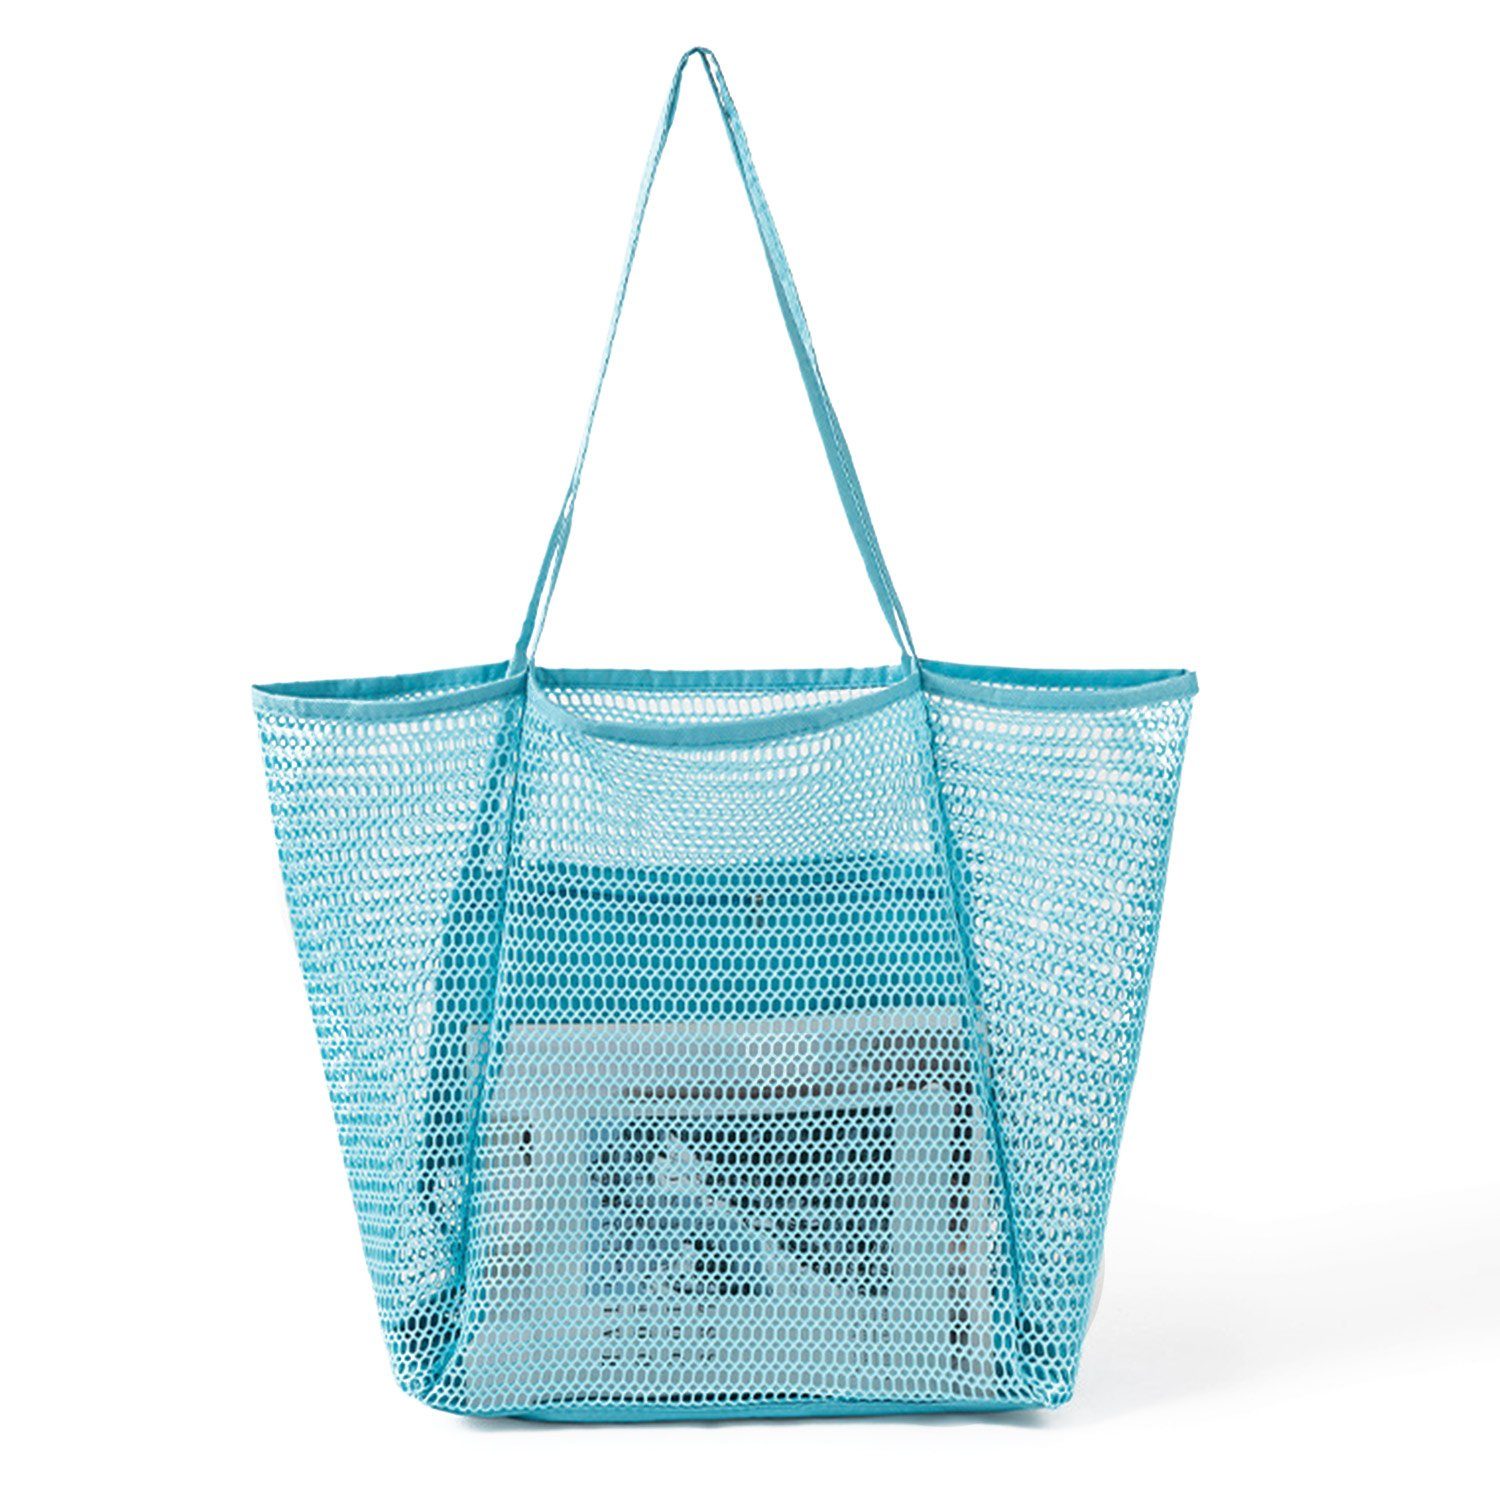 MAGICSHE Trachtentasche Mesh-Strandtasche, große Schultertasche, Innentasche mit Reißverschluss, Damen-Badetasche, Einkaufstasche Himmelblau | Trachtentaschen